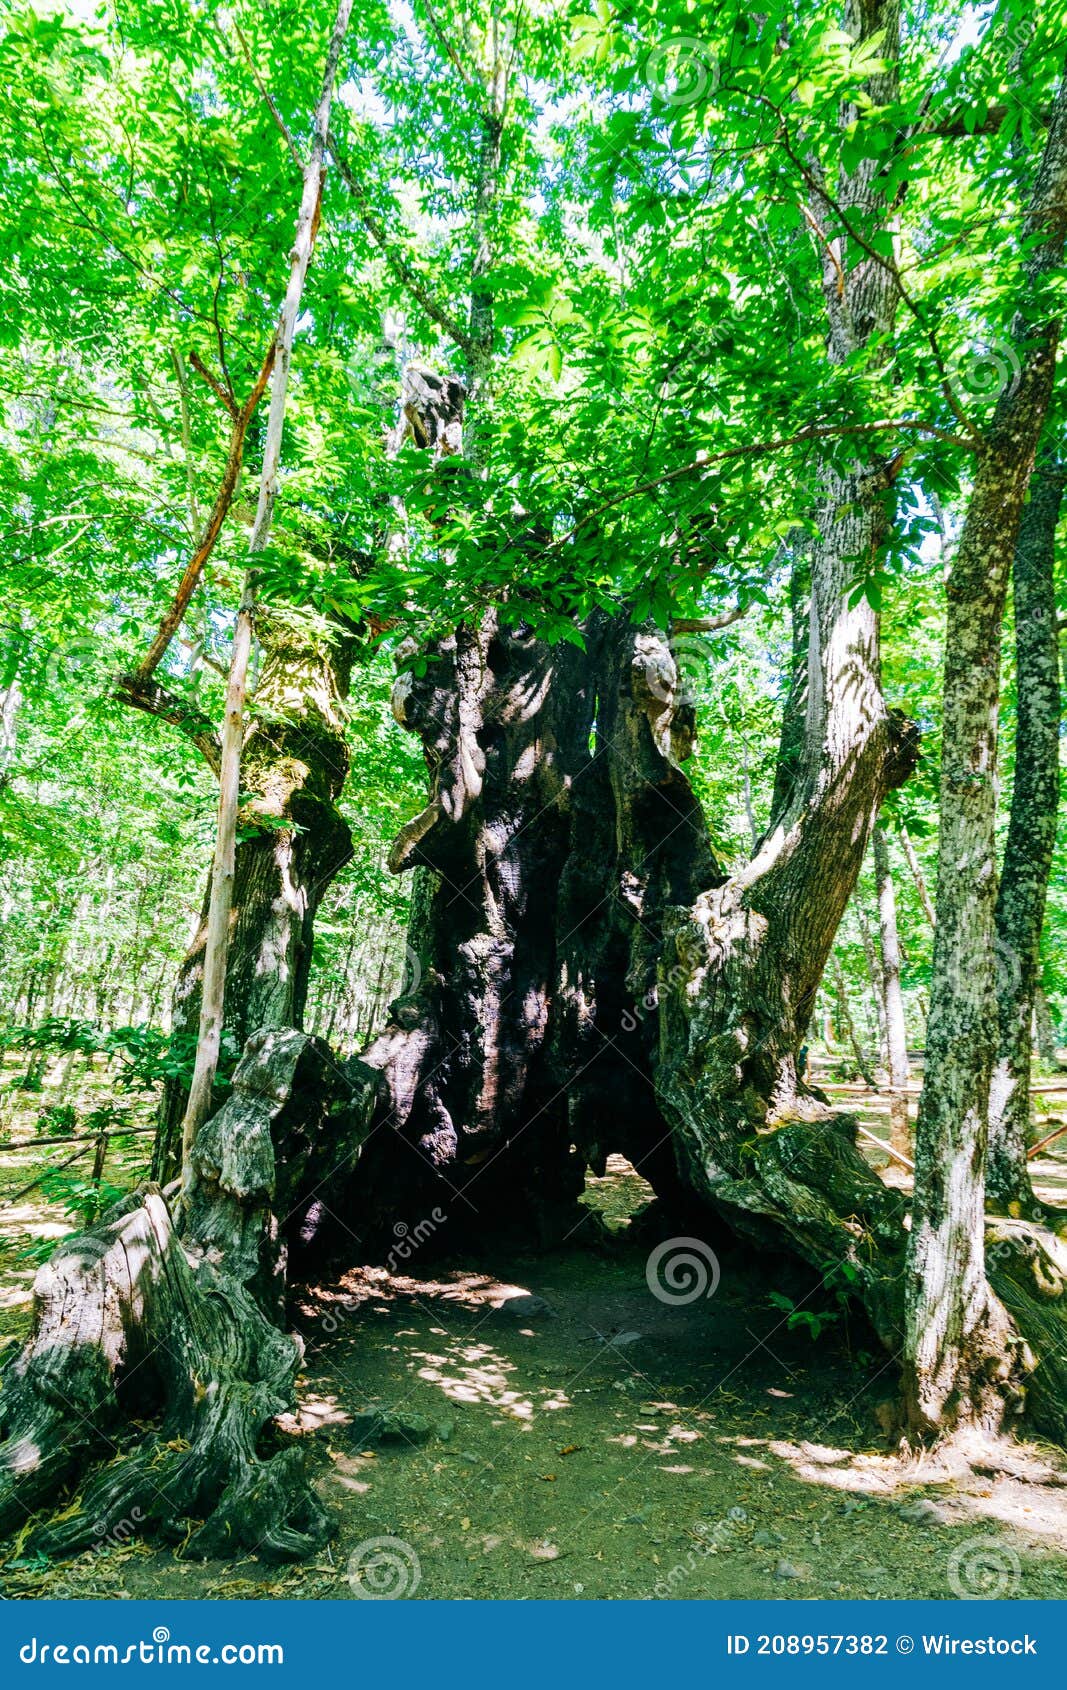 vertical shot of the el abuelo chestnut tree in avila, castile, spain